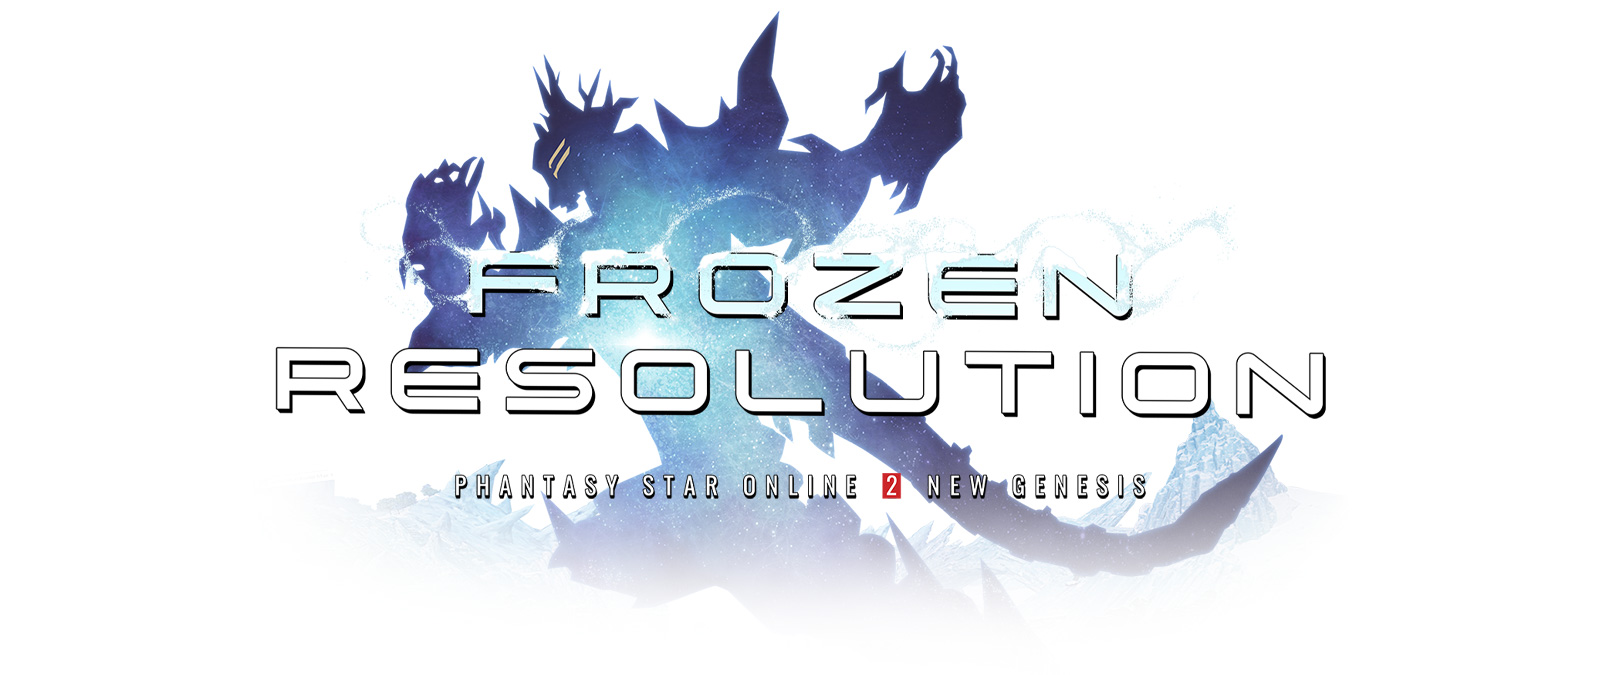 Frozen Resolution, Phantasy Star Online 2 New Genesis, sylwetka zbroi pokryta szronem.